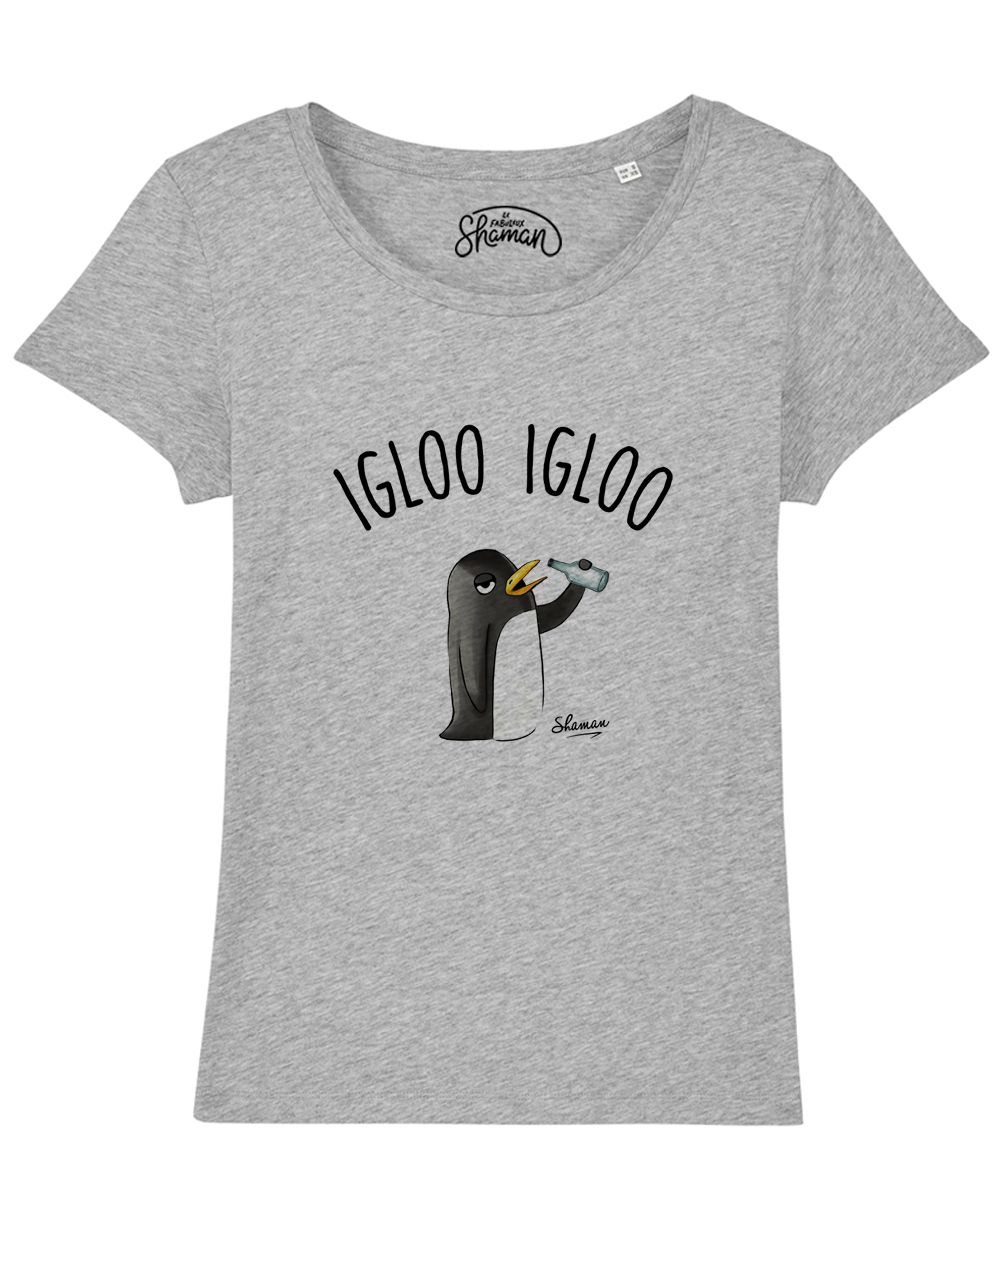 T-shirt "Igloo igloo"